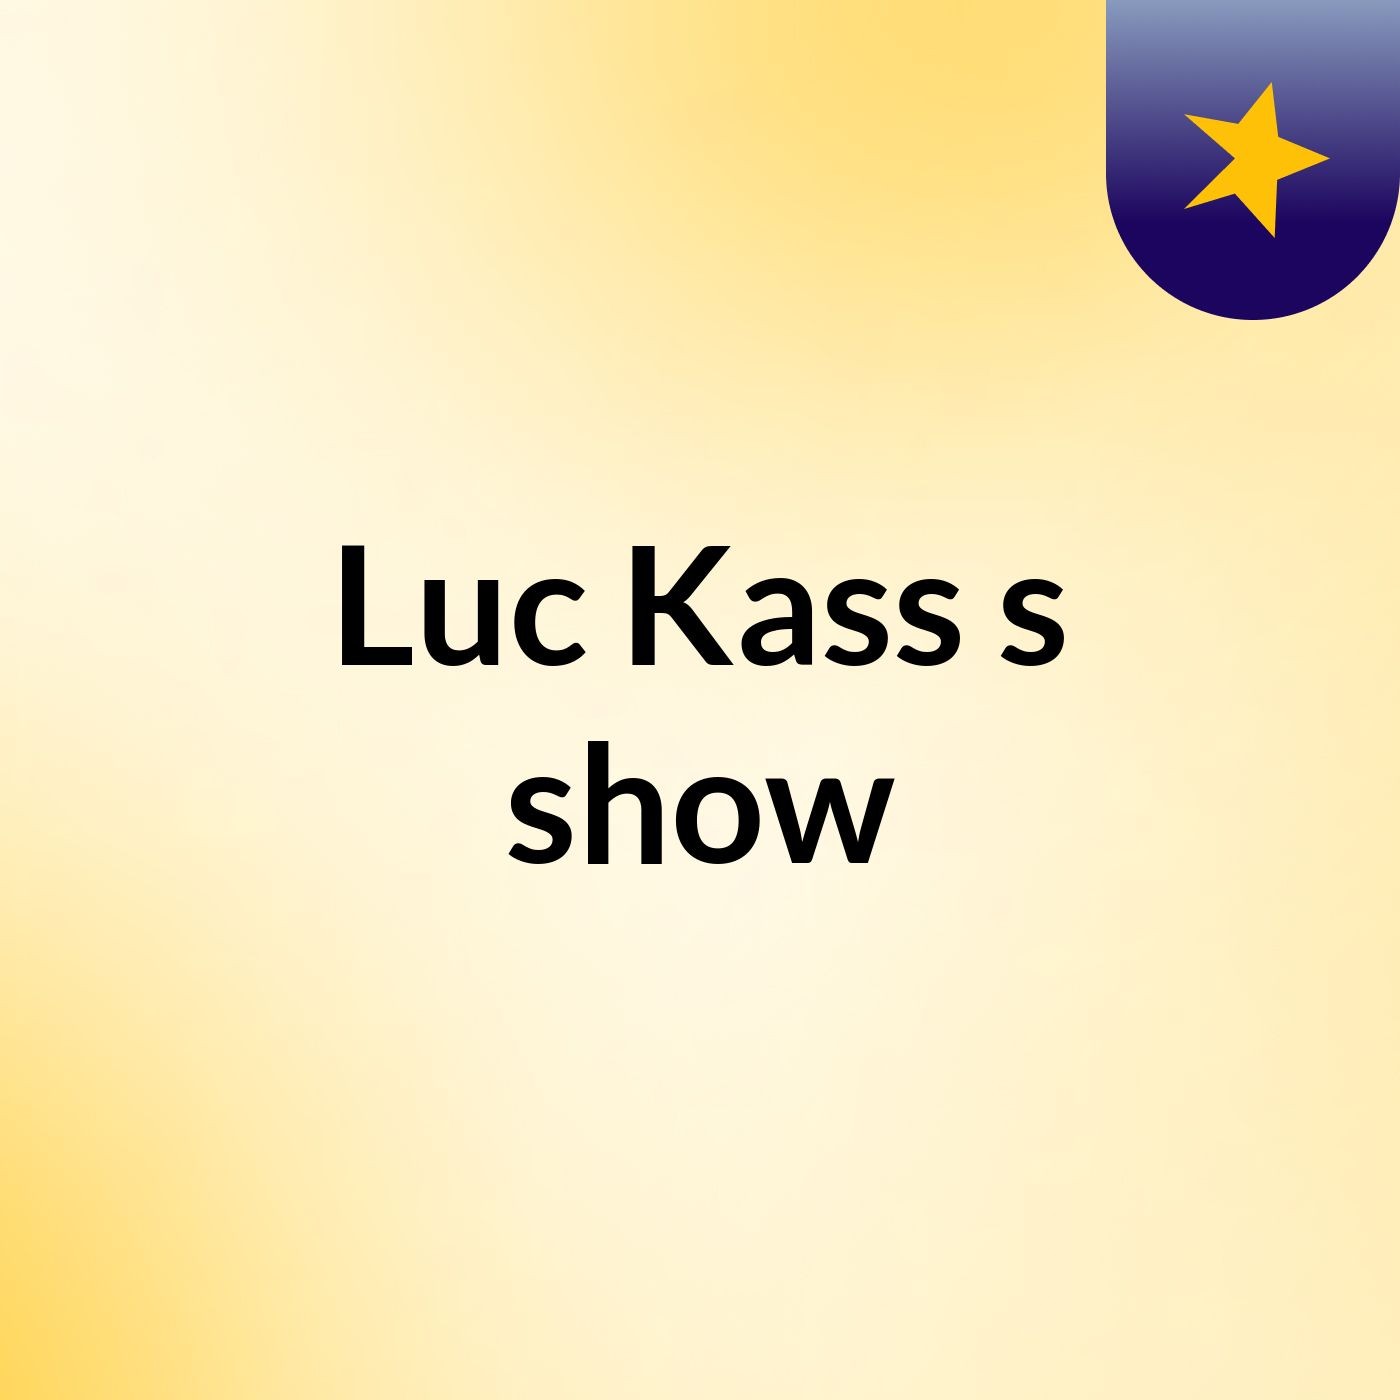 Luc Kass's show